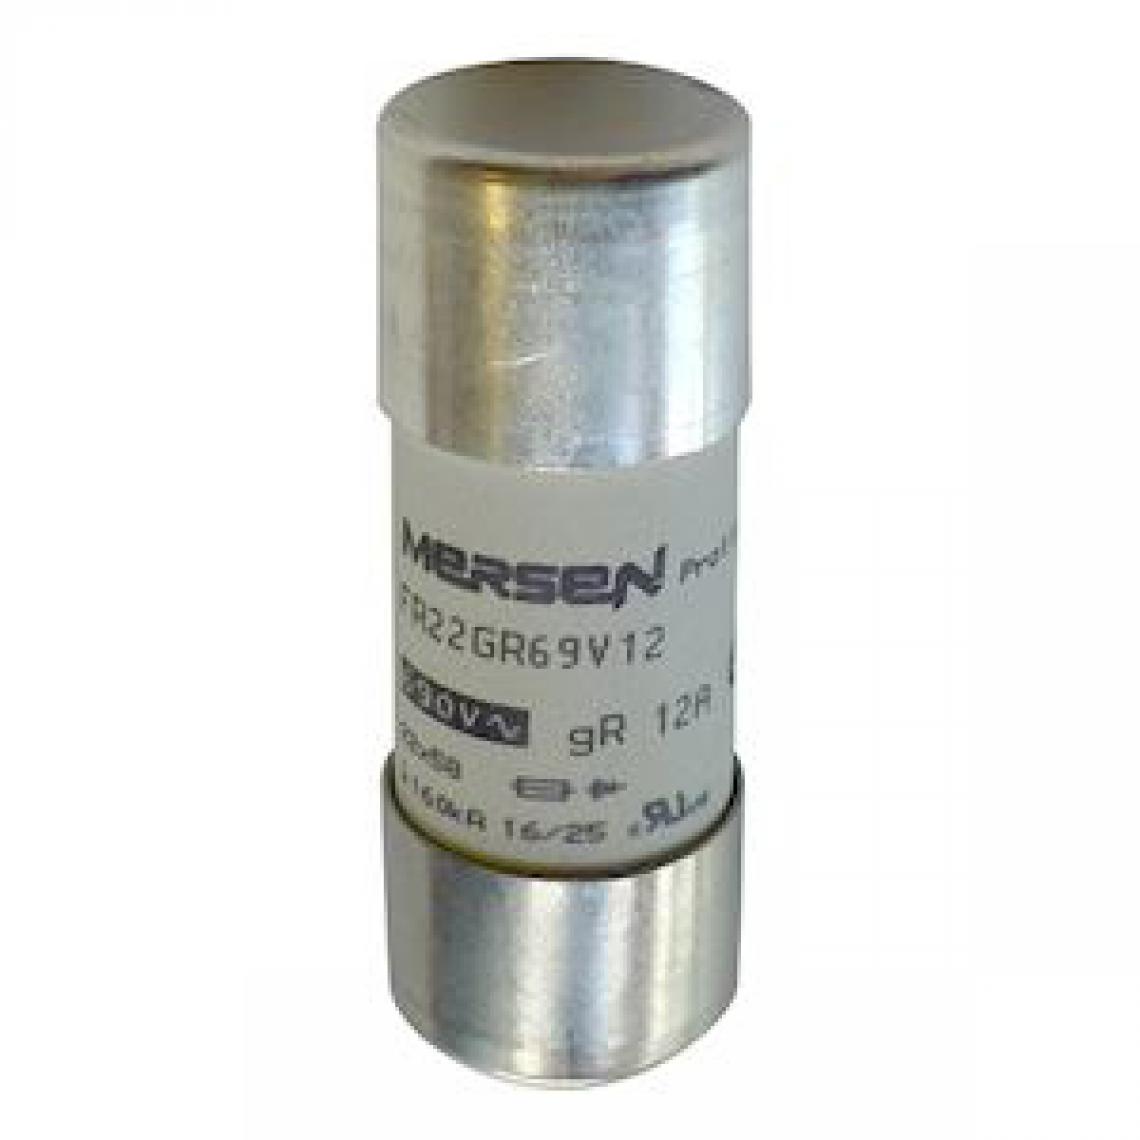 Mersen - fusible cartouche - 22 x 58 - gr - 50a - 690v - sans indicateur - mersen c1018557 - Fusibles